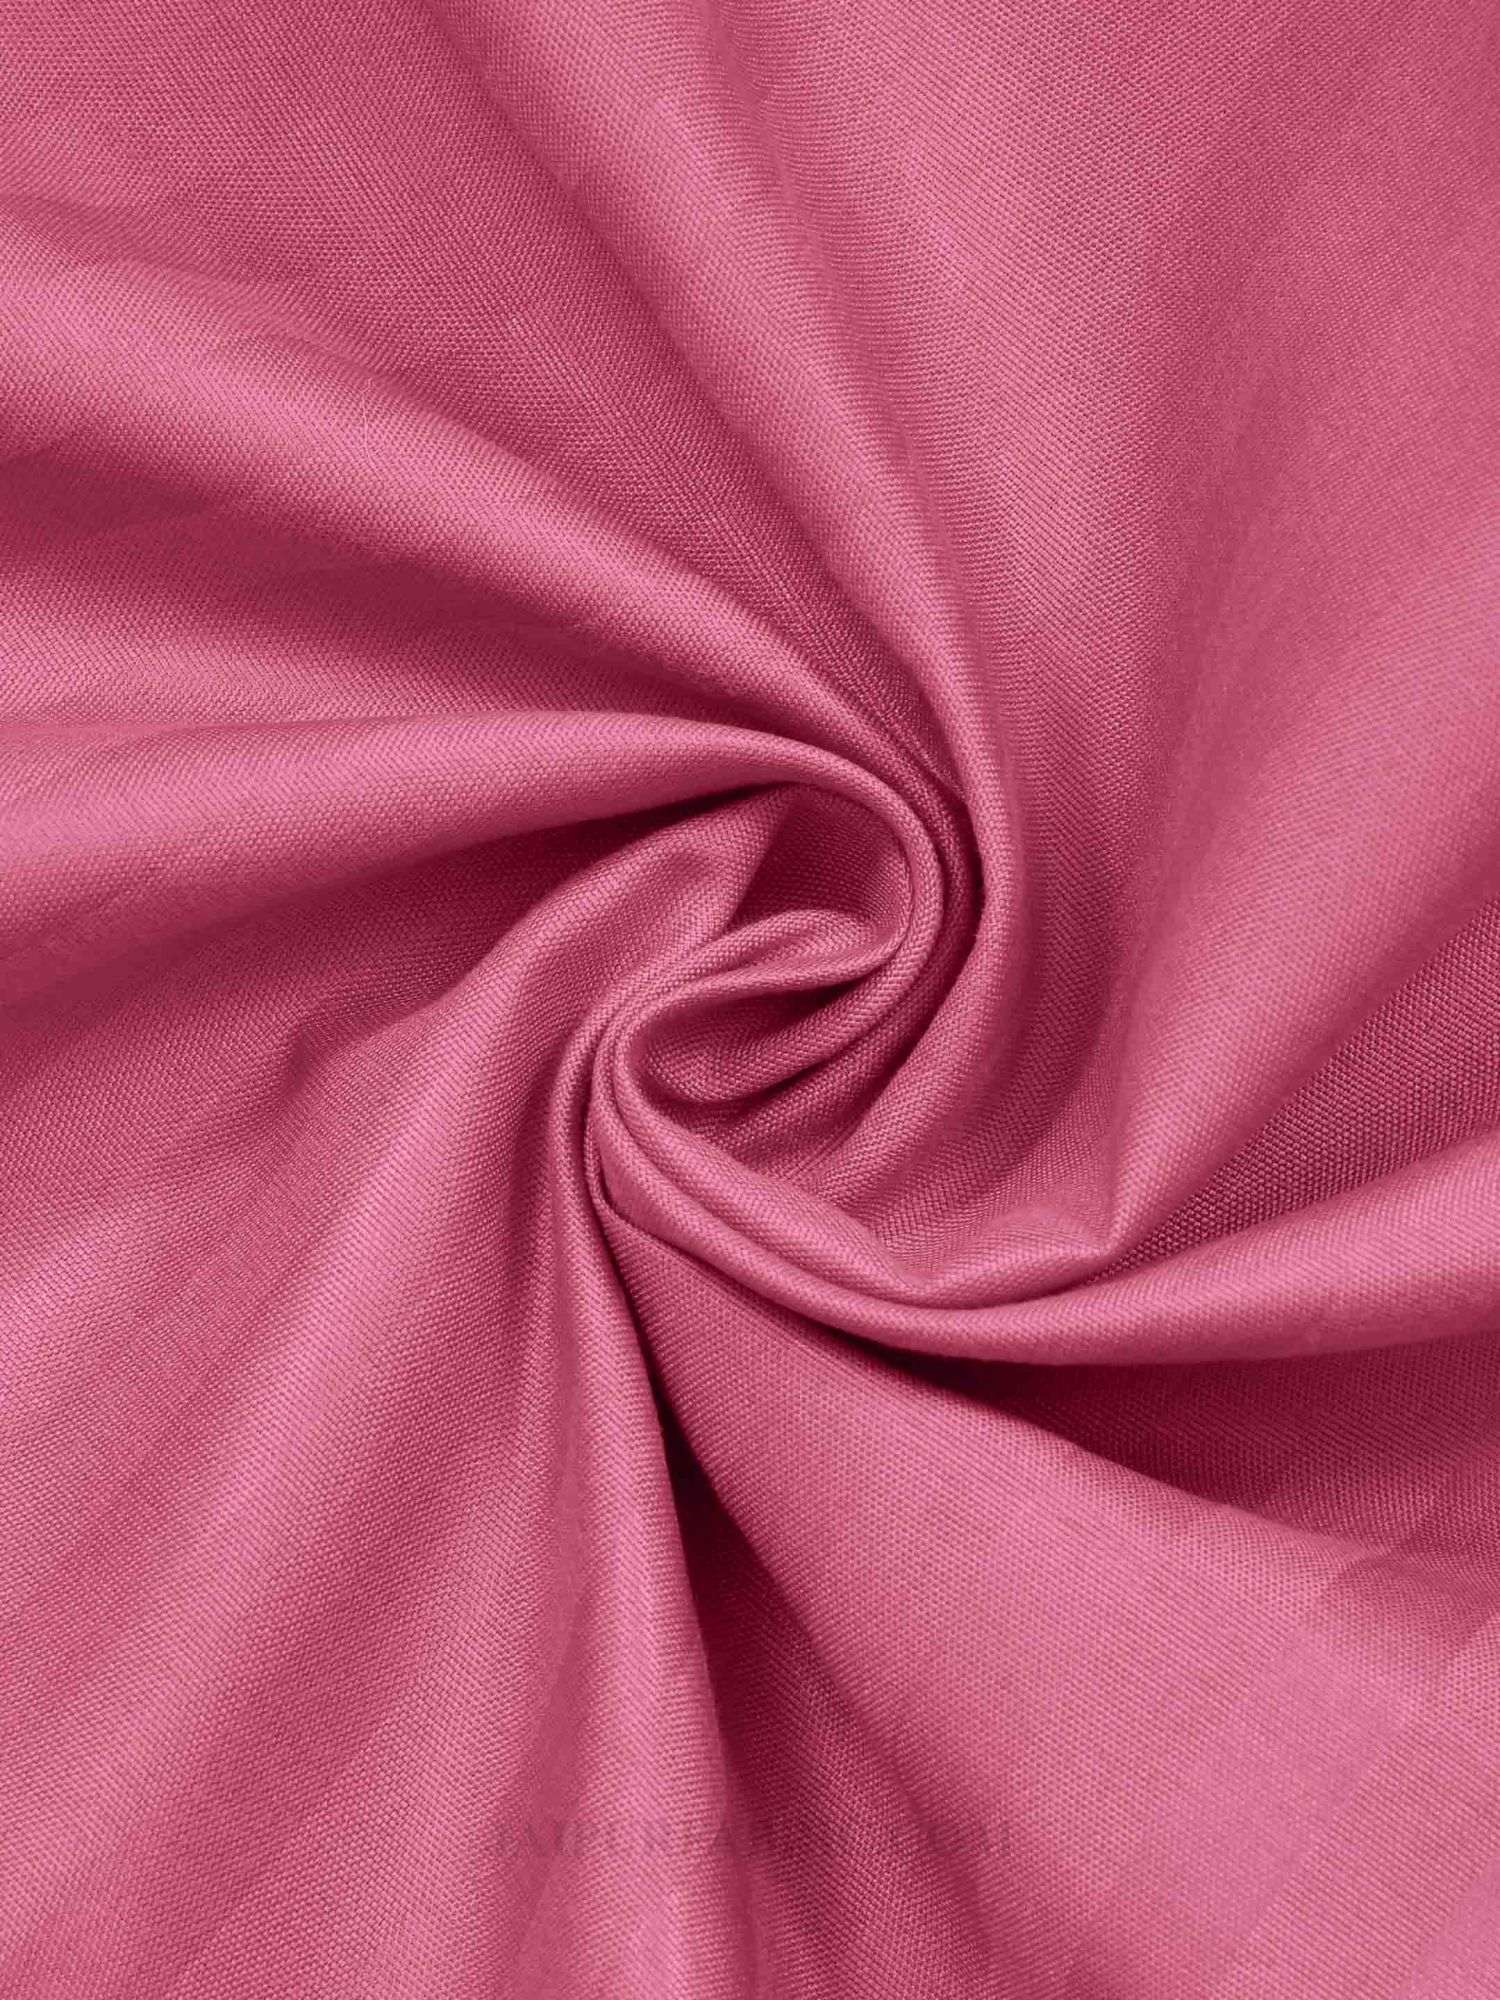 Rose Pink Satin Stripes Single BedSheet